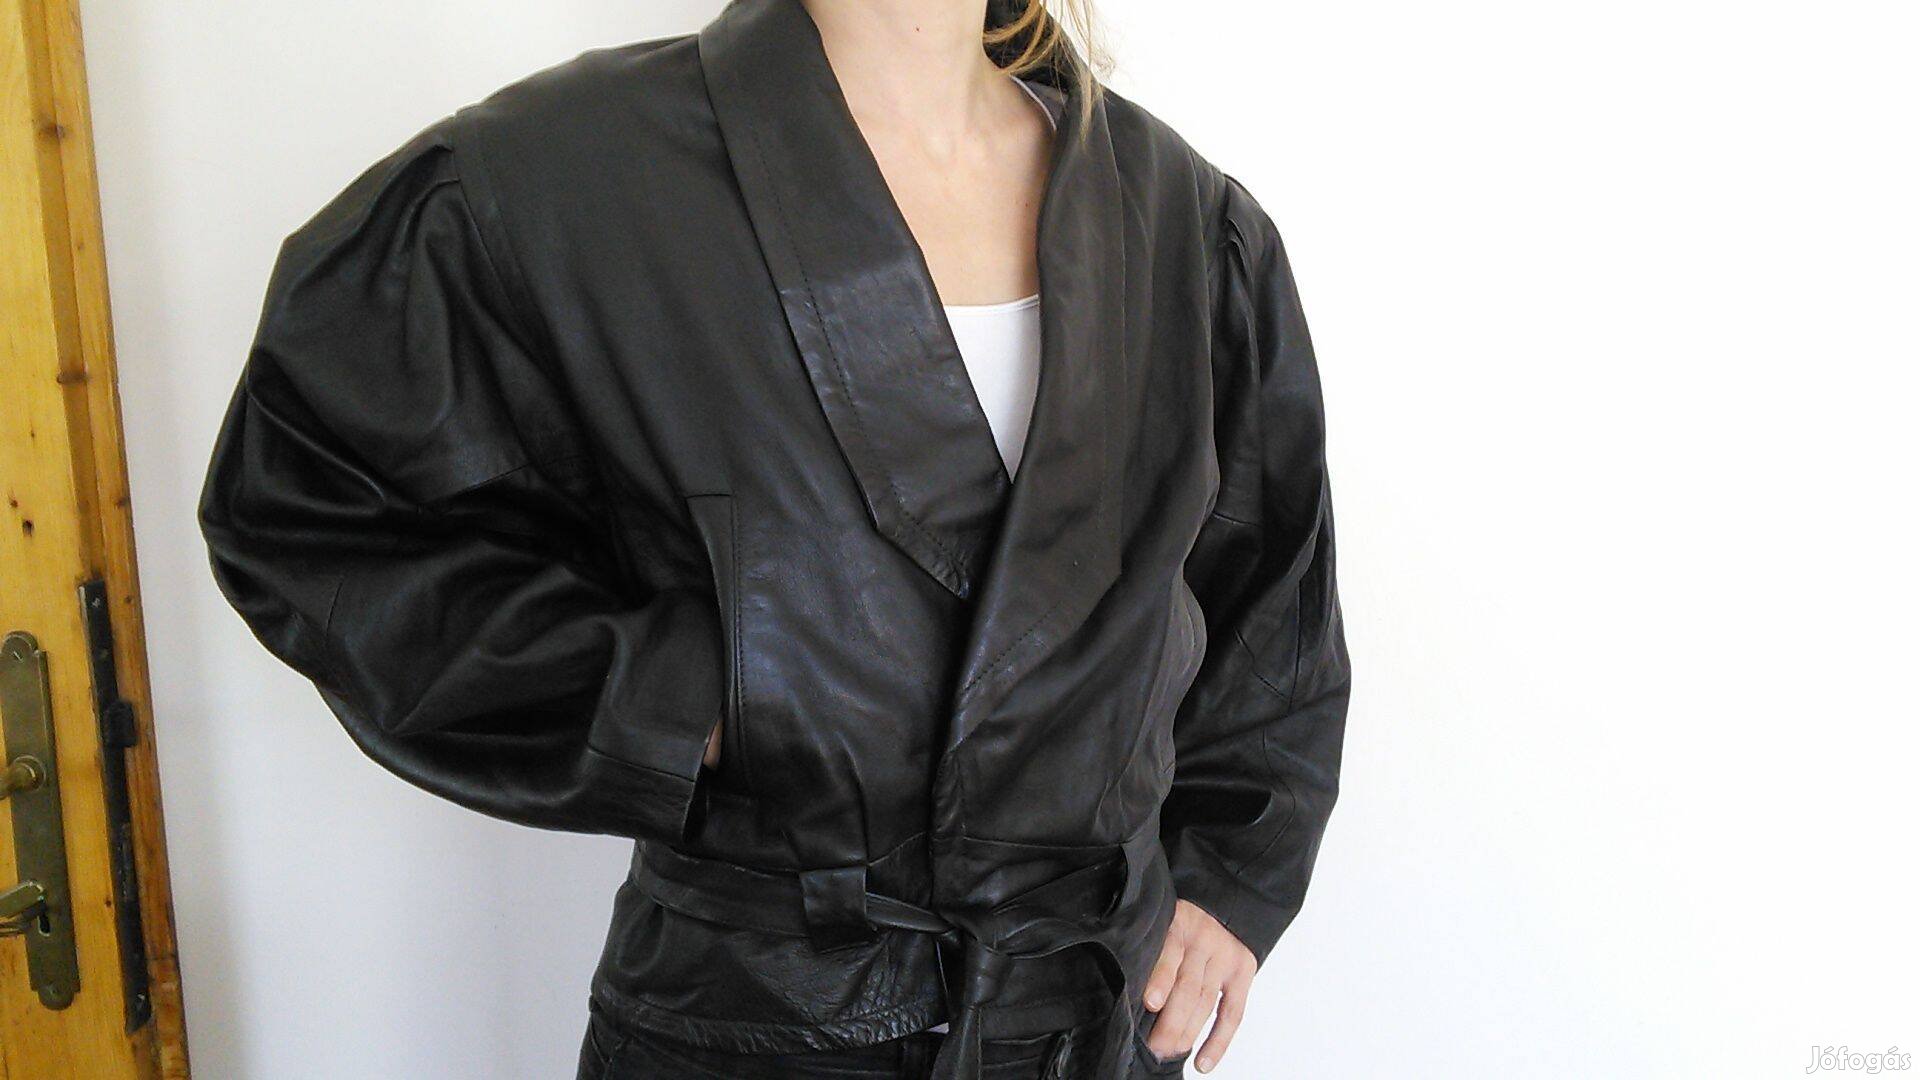 Bőrdzseki bőr női dzseki fekete M M-es bőrkabát kabát denevérujjú